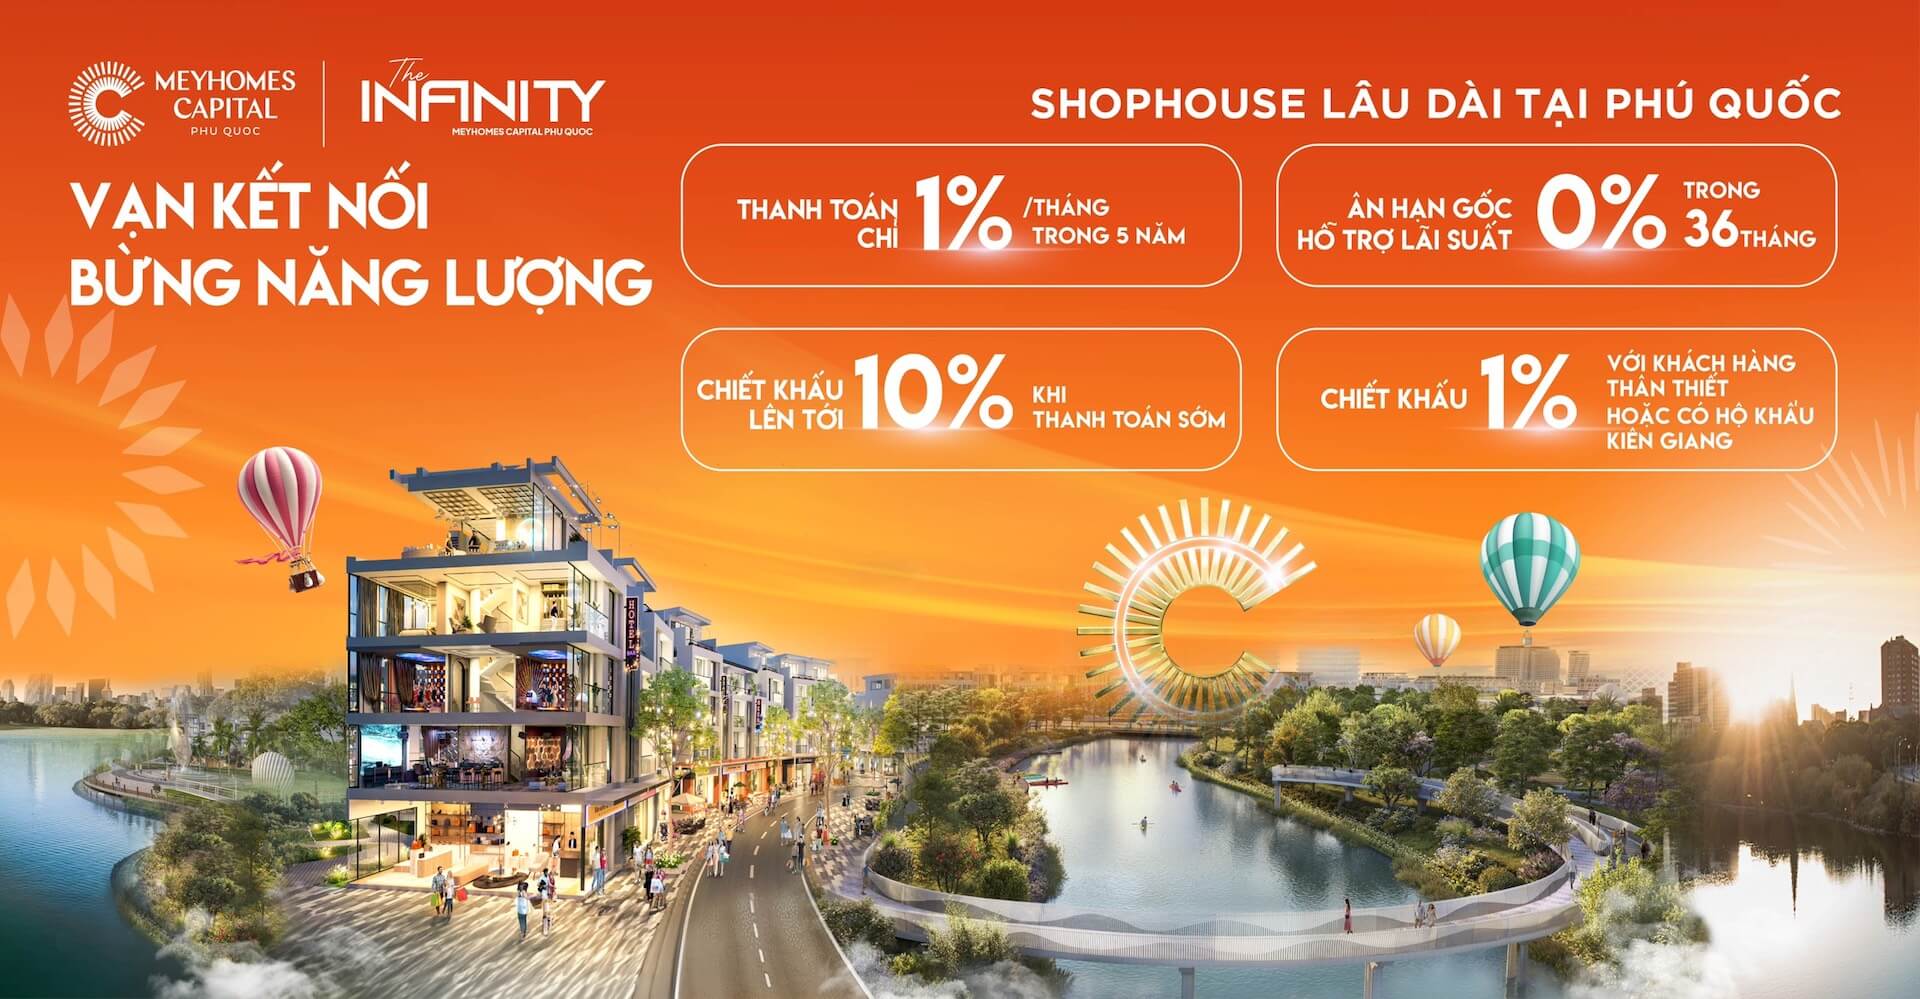 Phân khu The Infinity - Meyhomes Capital Phú Quốc khởi động với “Cú đột phá” về chính sách ưu đãi